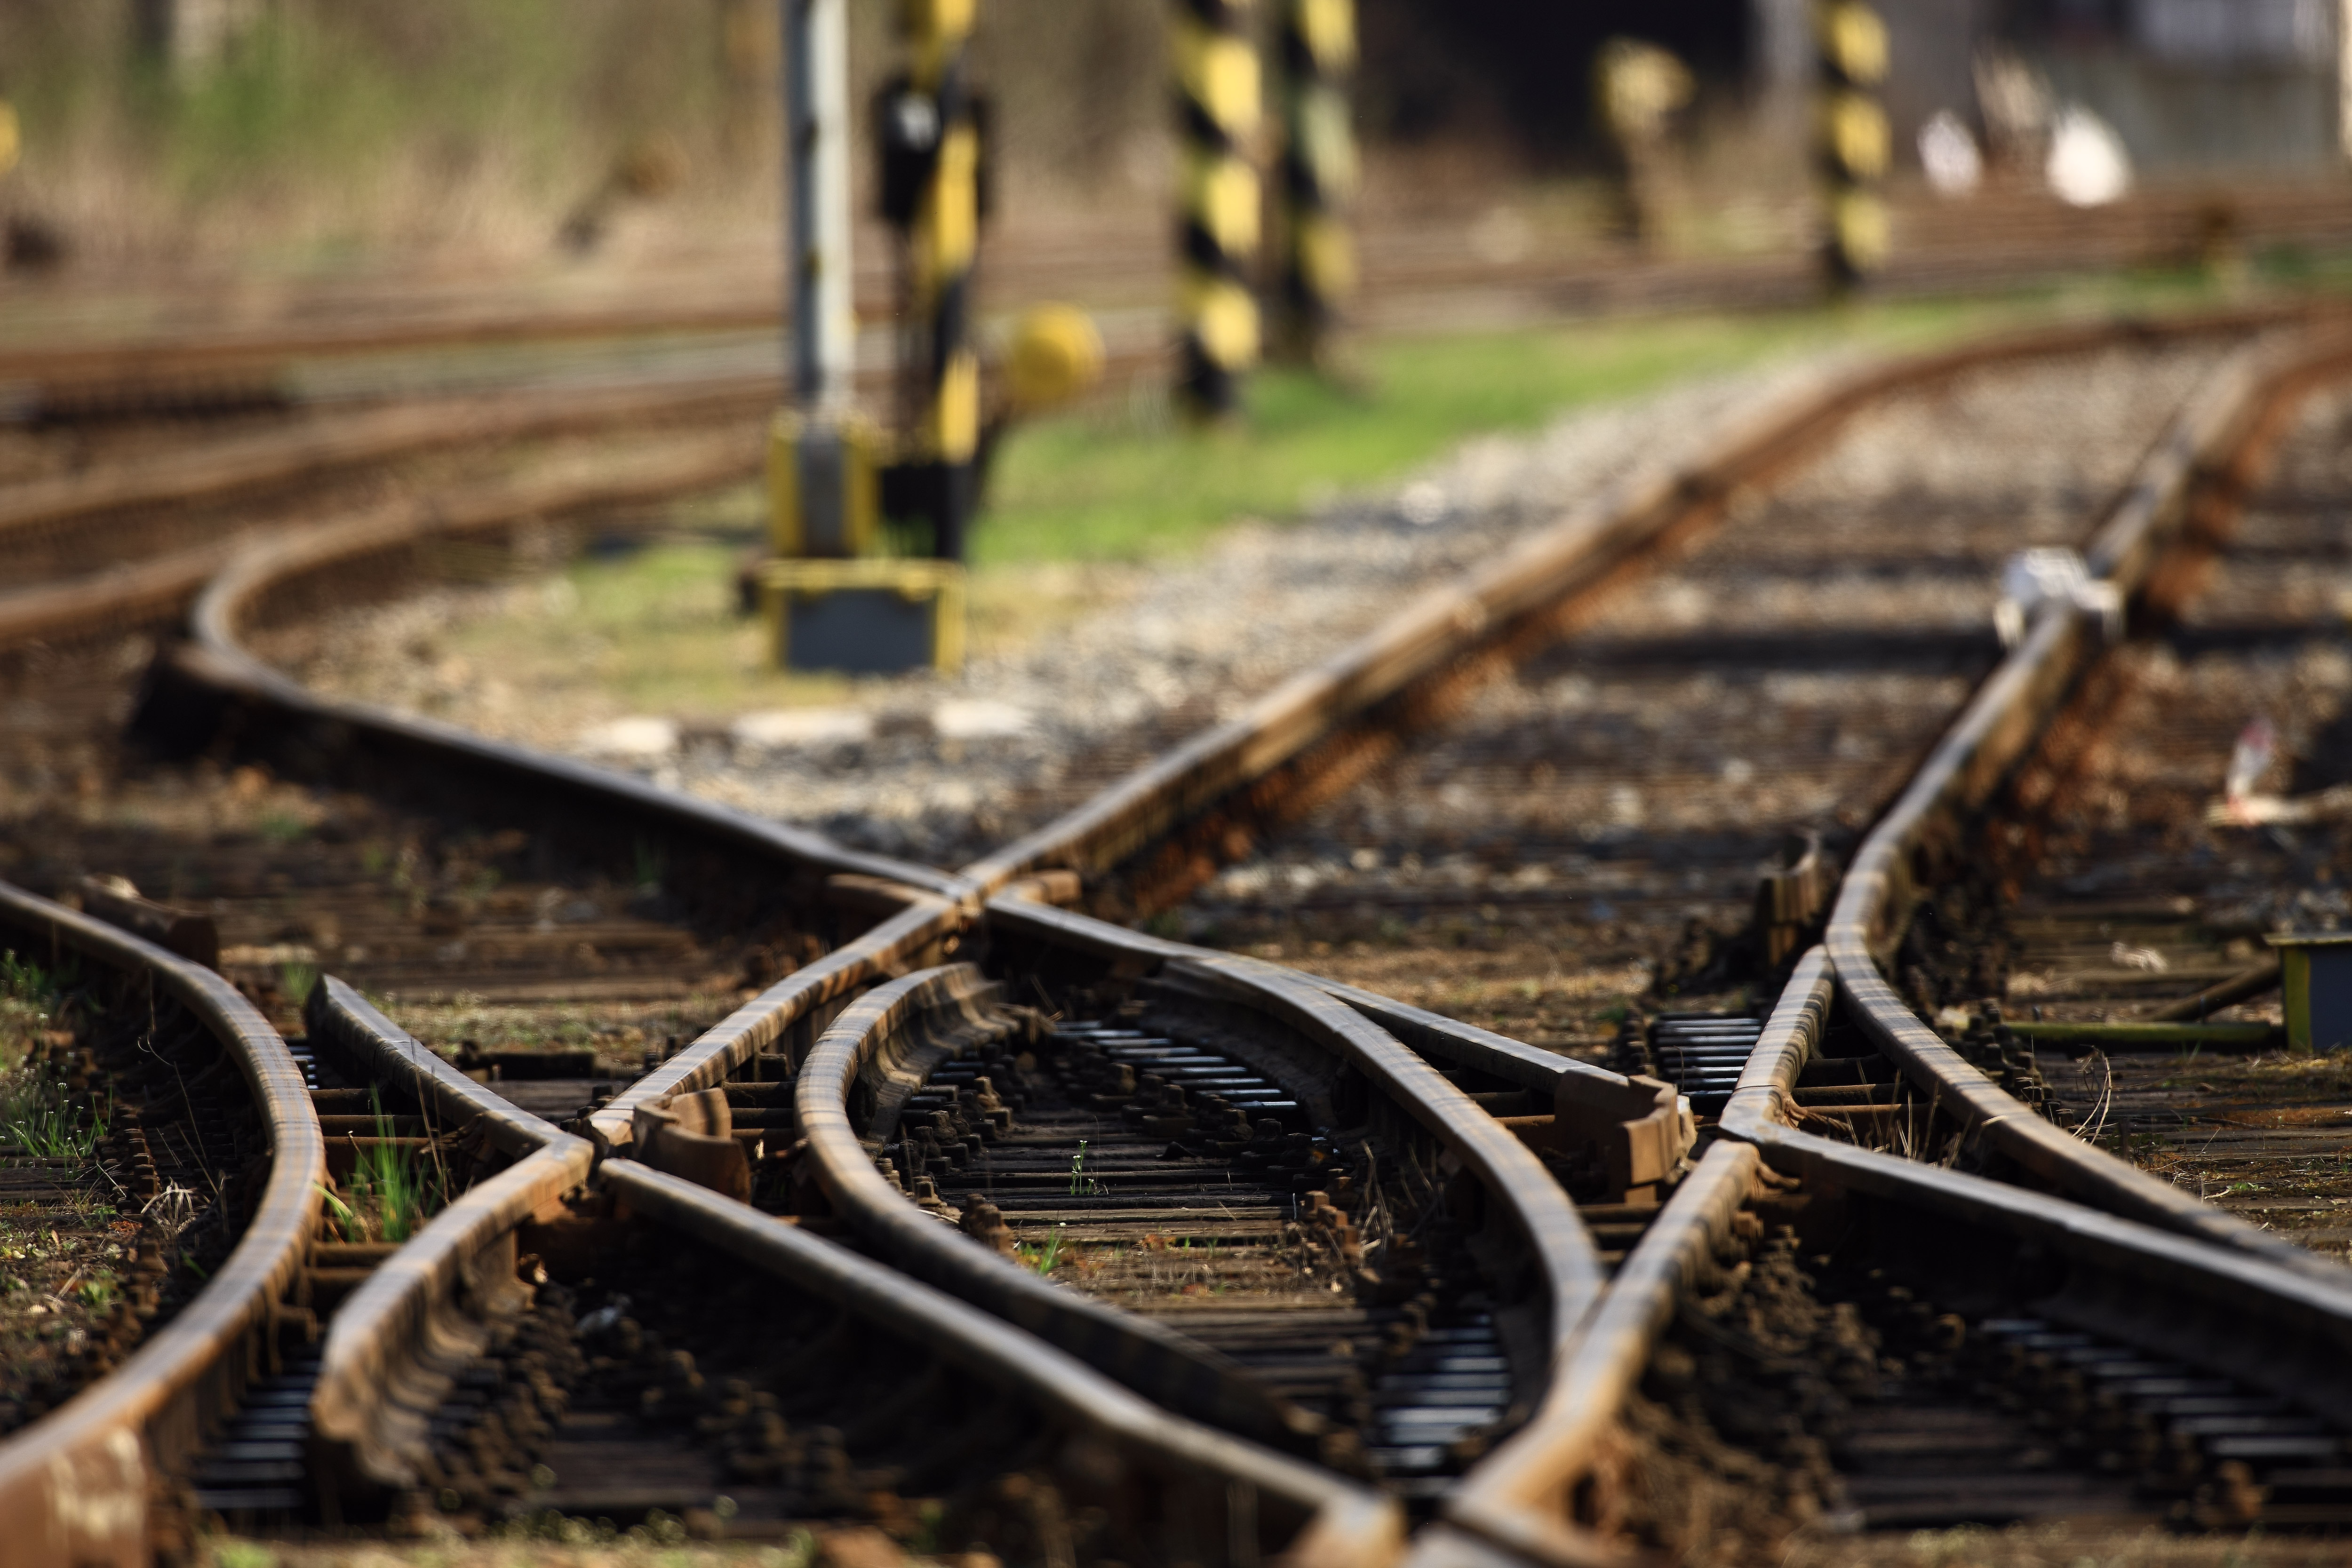 Koncept Správy železnic na zabezpečení tratí se zjednodušeným řízením provozu